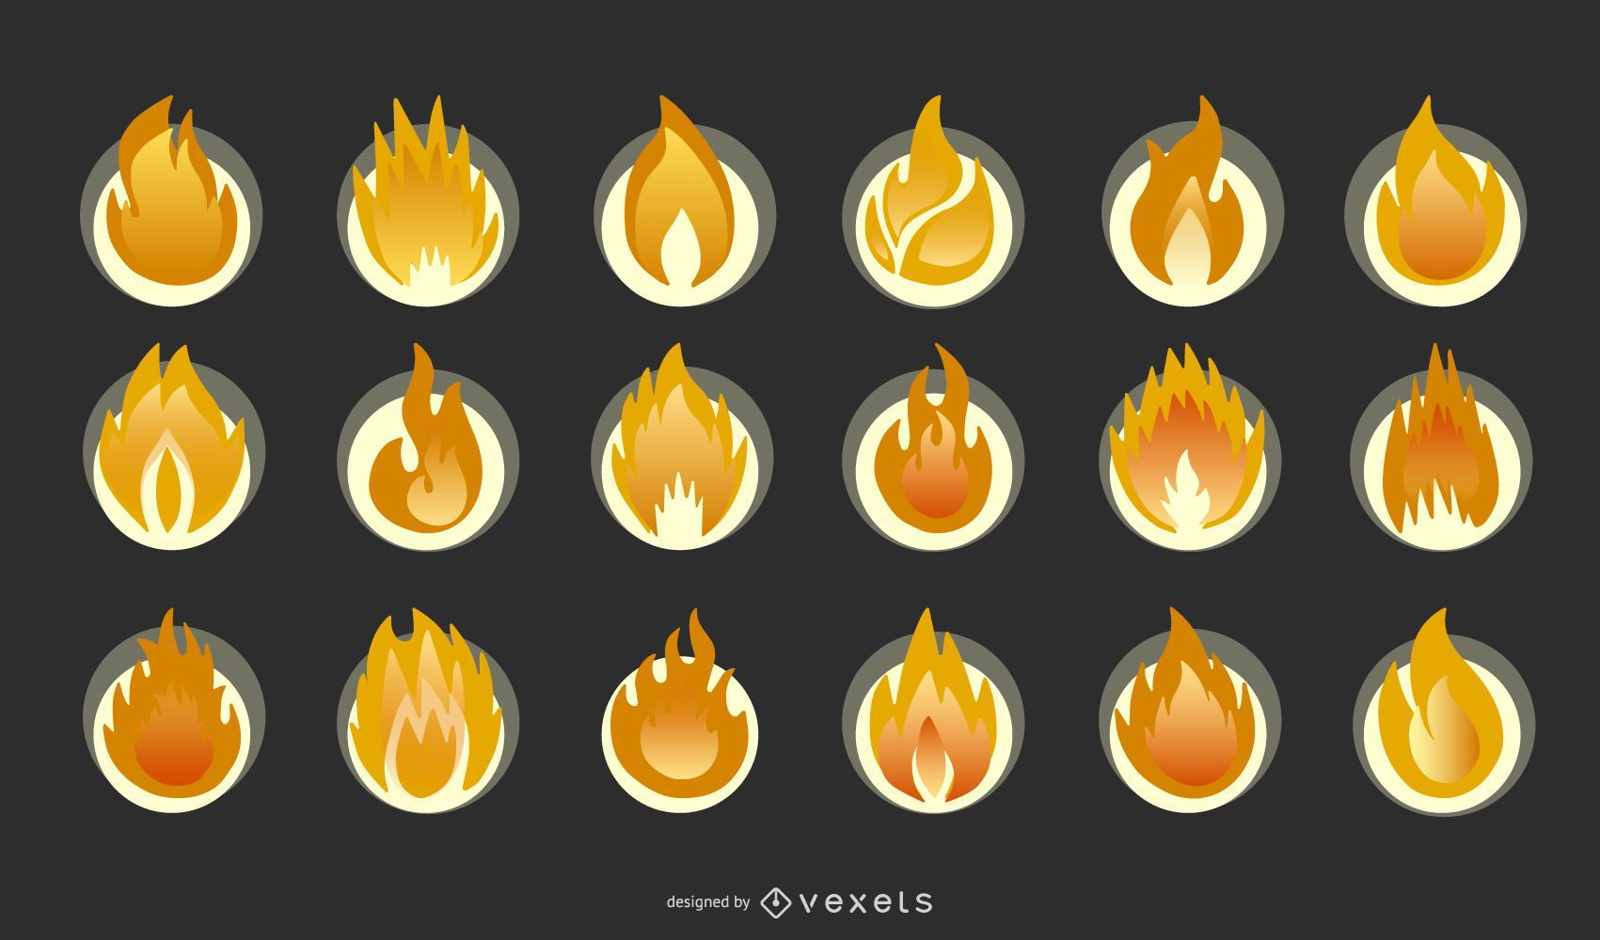 Coleção de ícones do elemento fogo